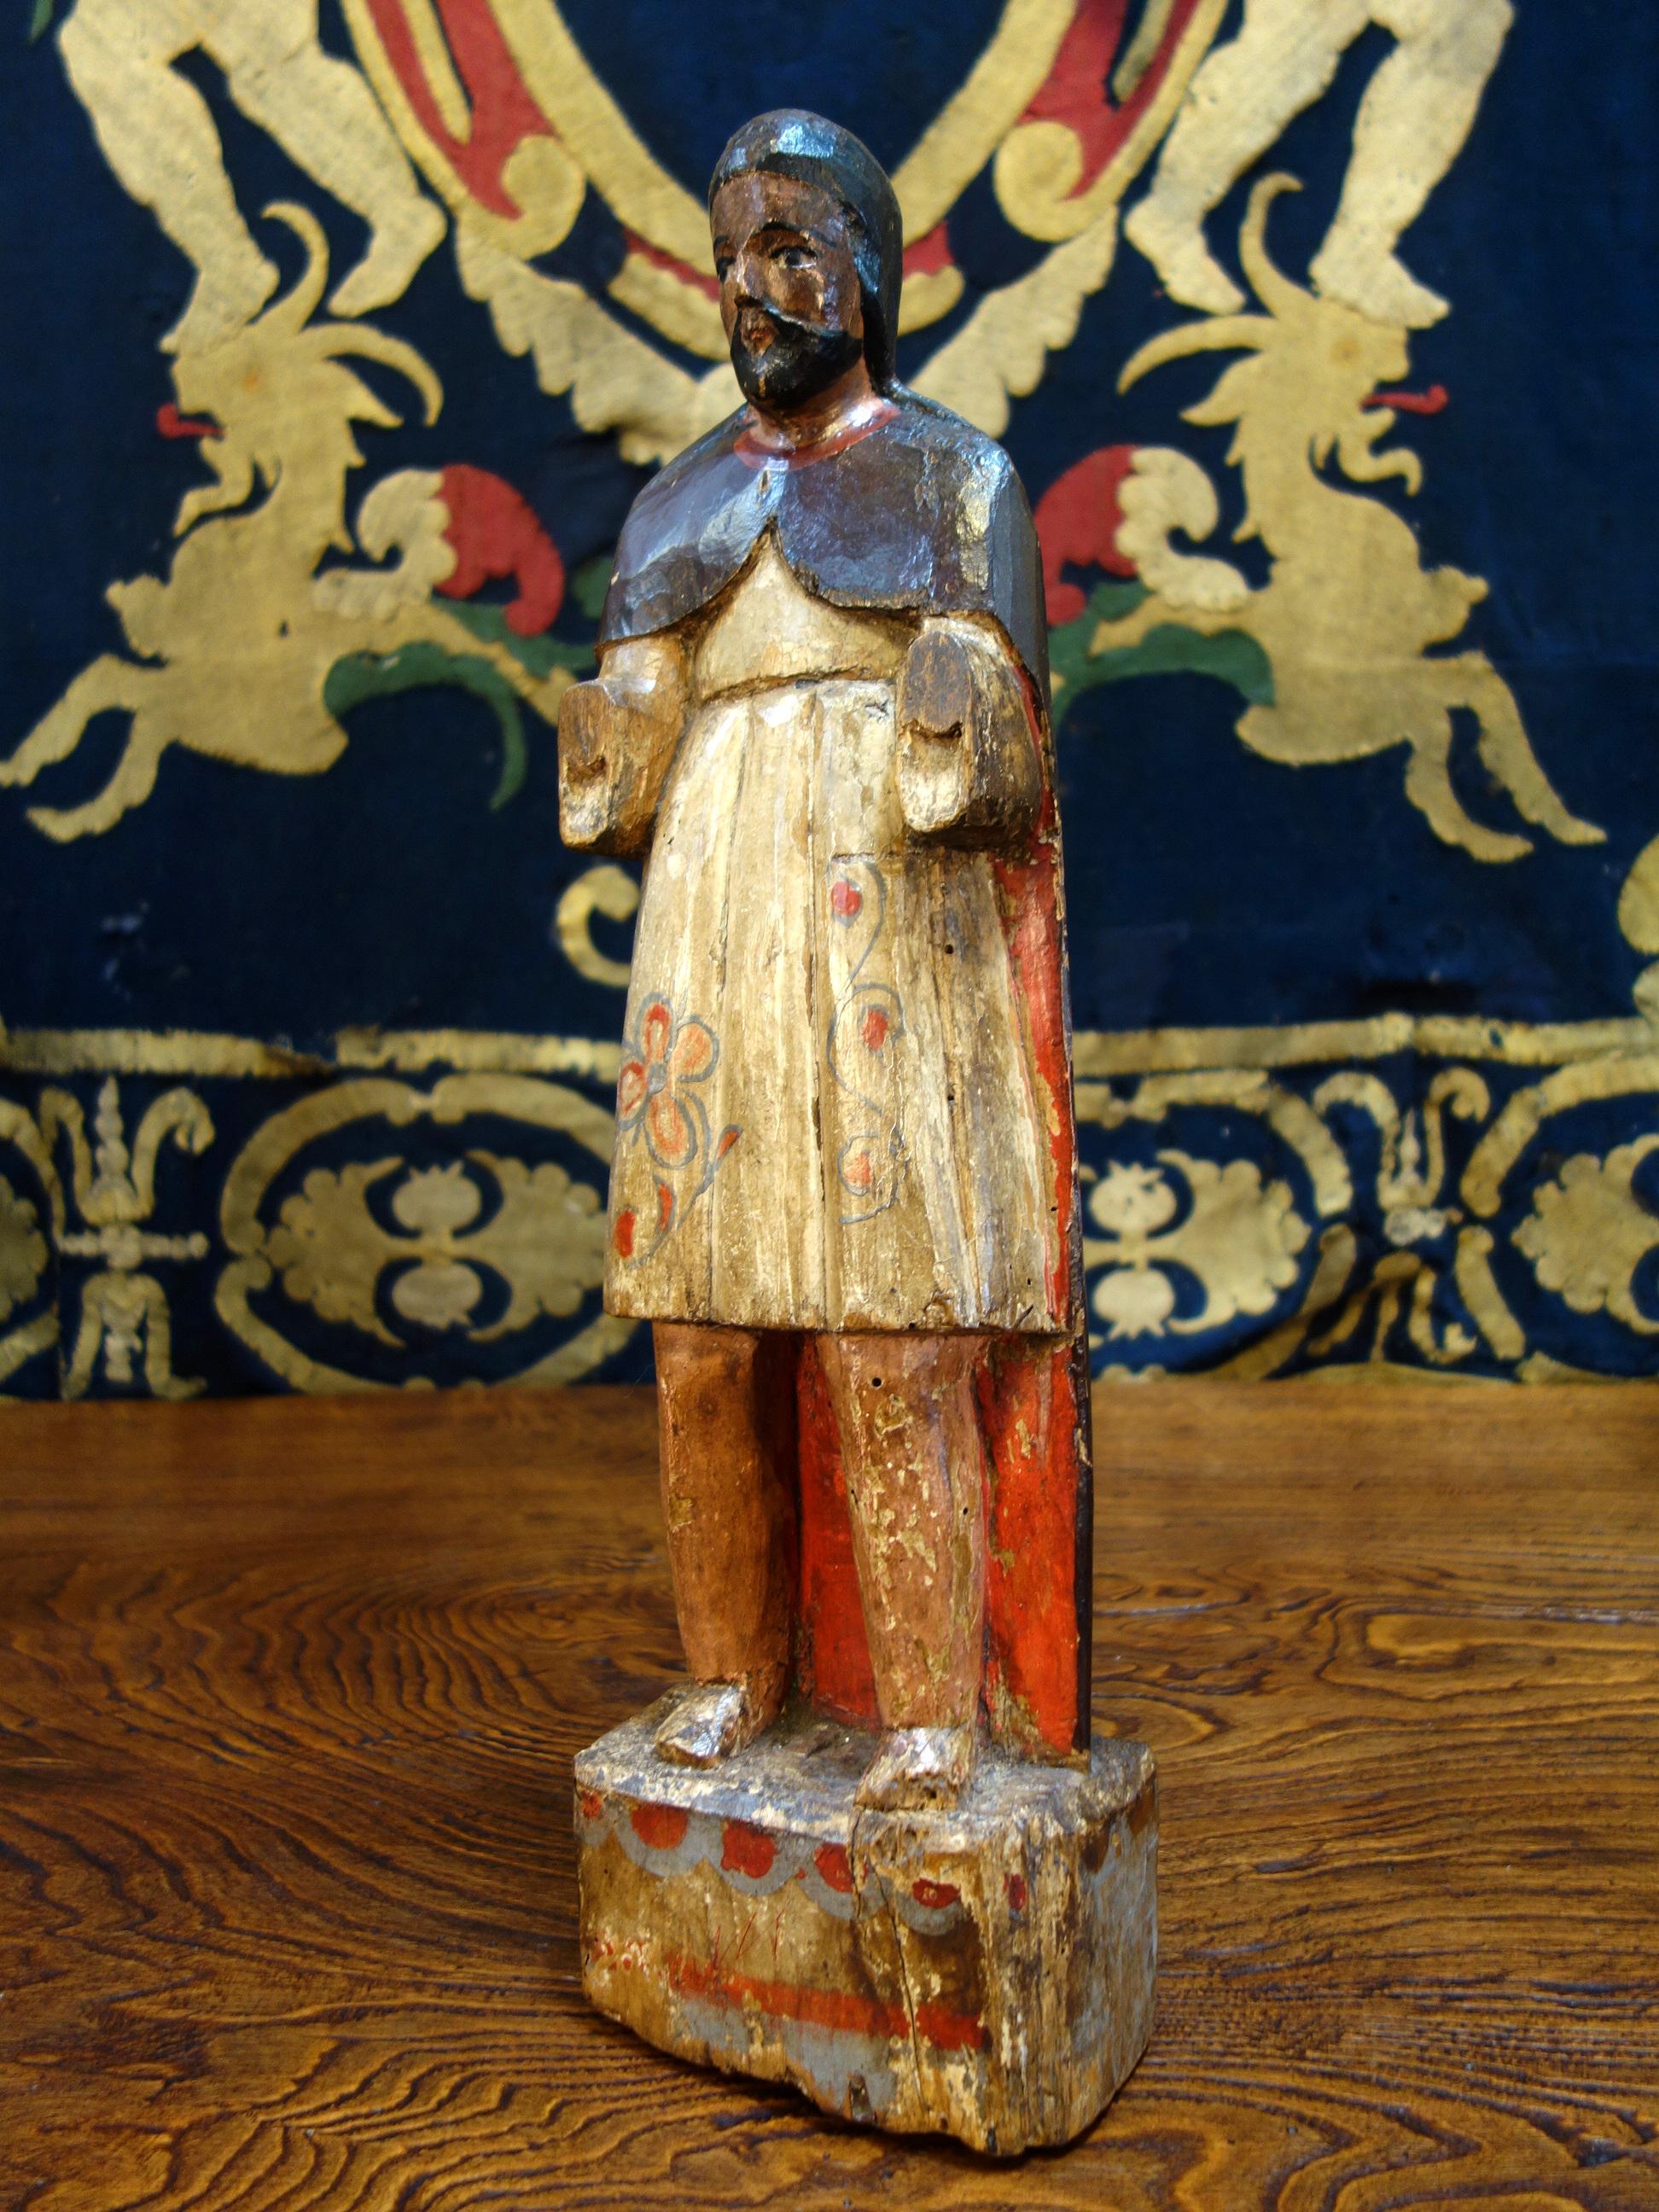 Sculpture italienne primitive en bois de Santos du XIXe siècle, sculptée et peinte à la main, vers 1840.

Mesures : 22,2